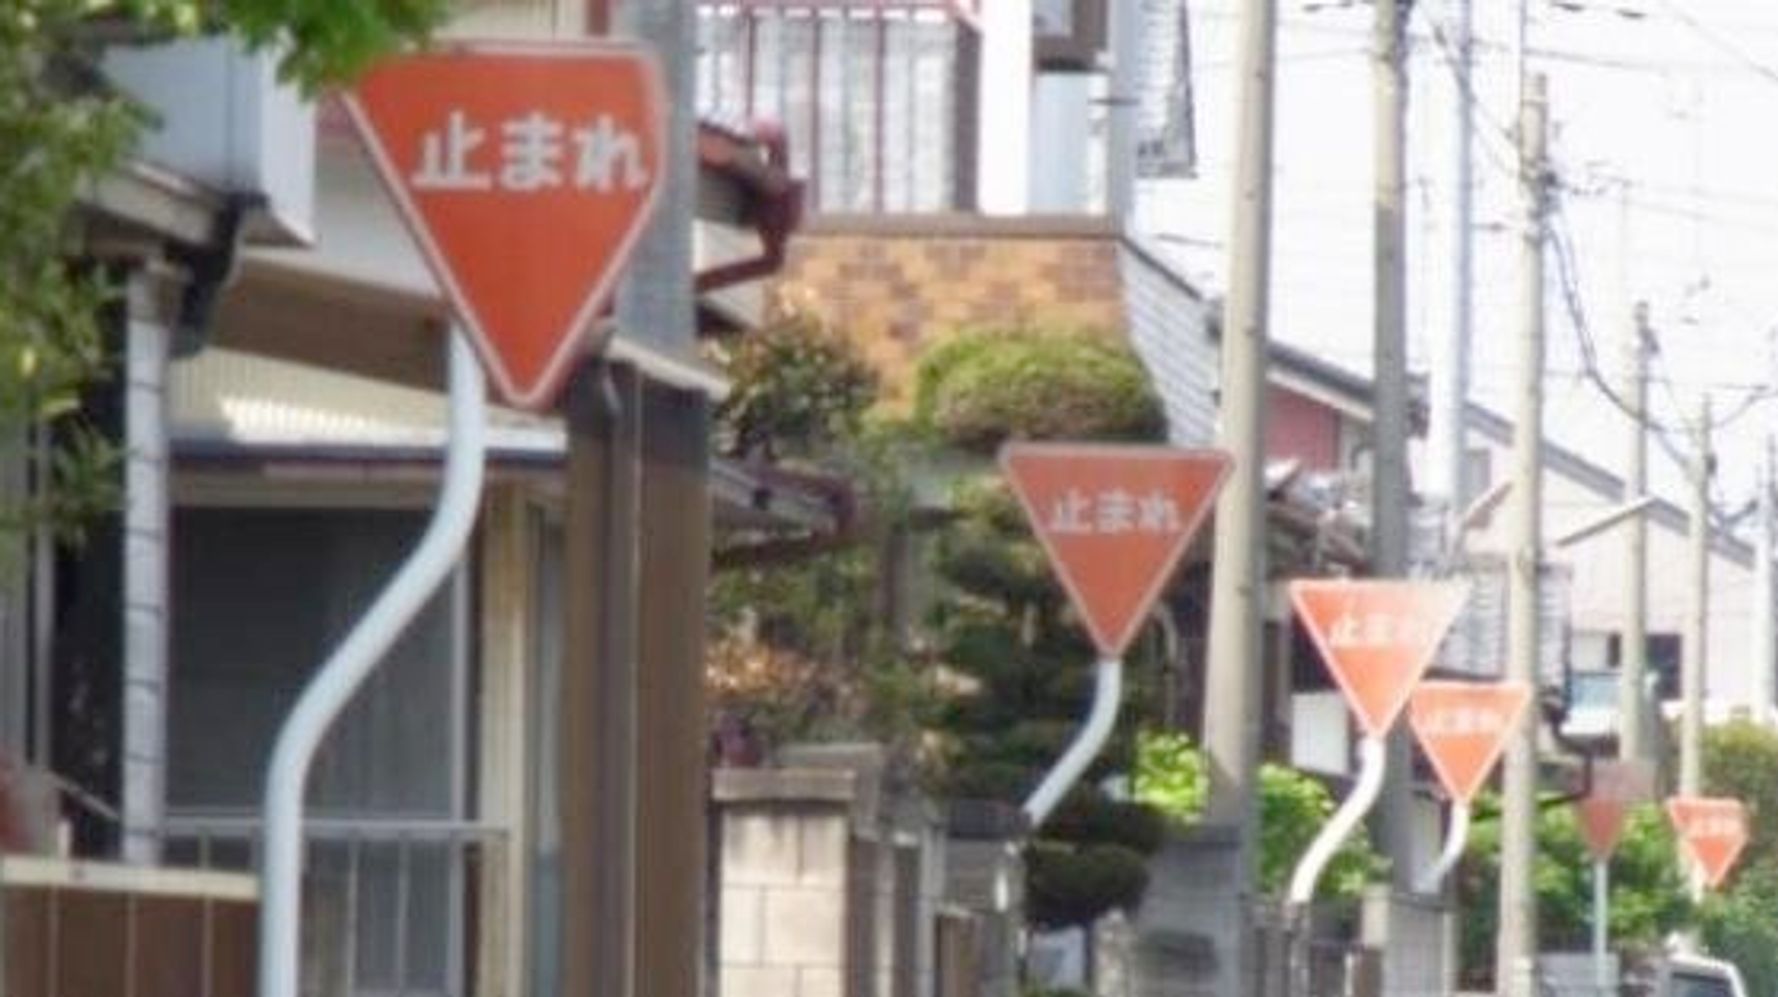 群馬県大泉町にある 止まれ の標識がすごい 画像 動画 ハフポスト News